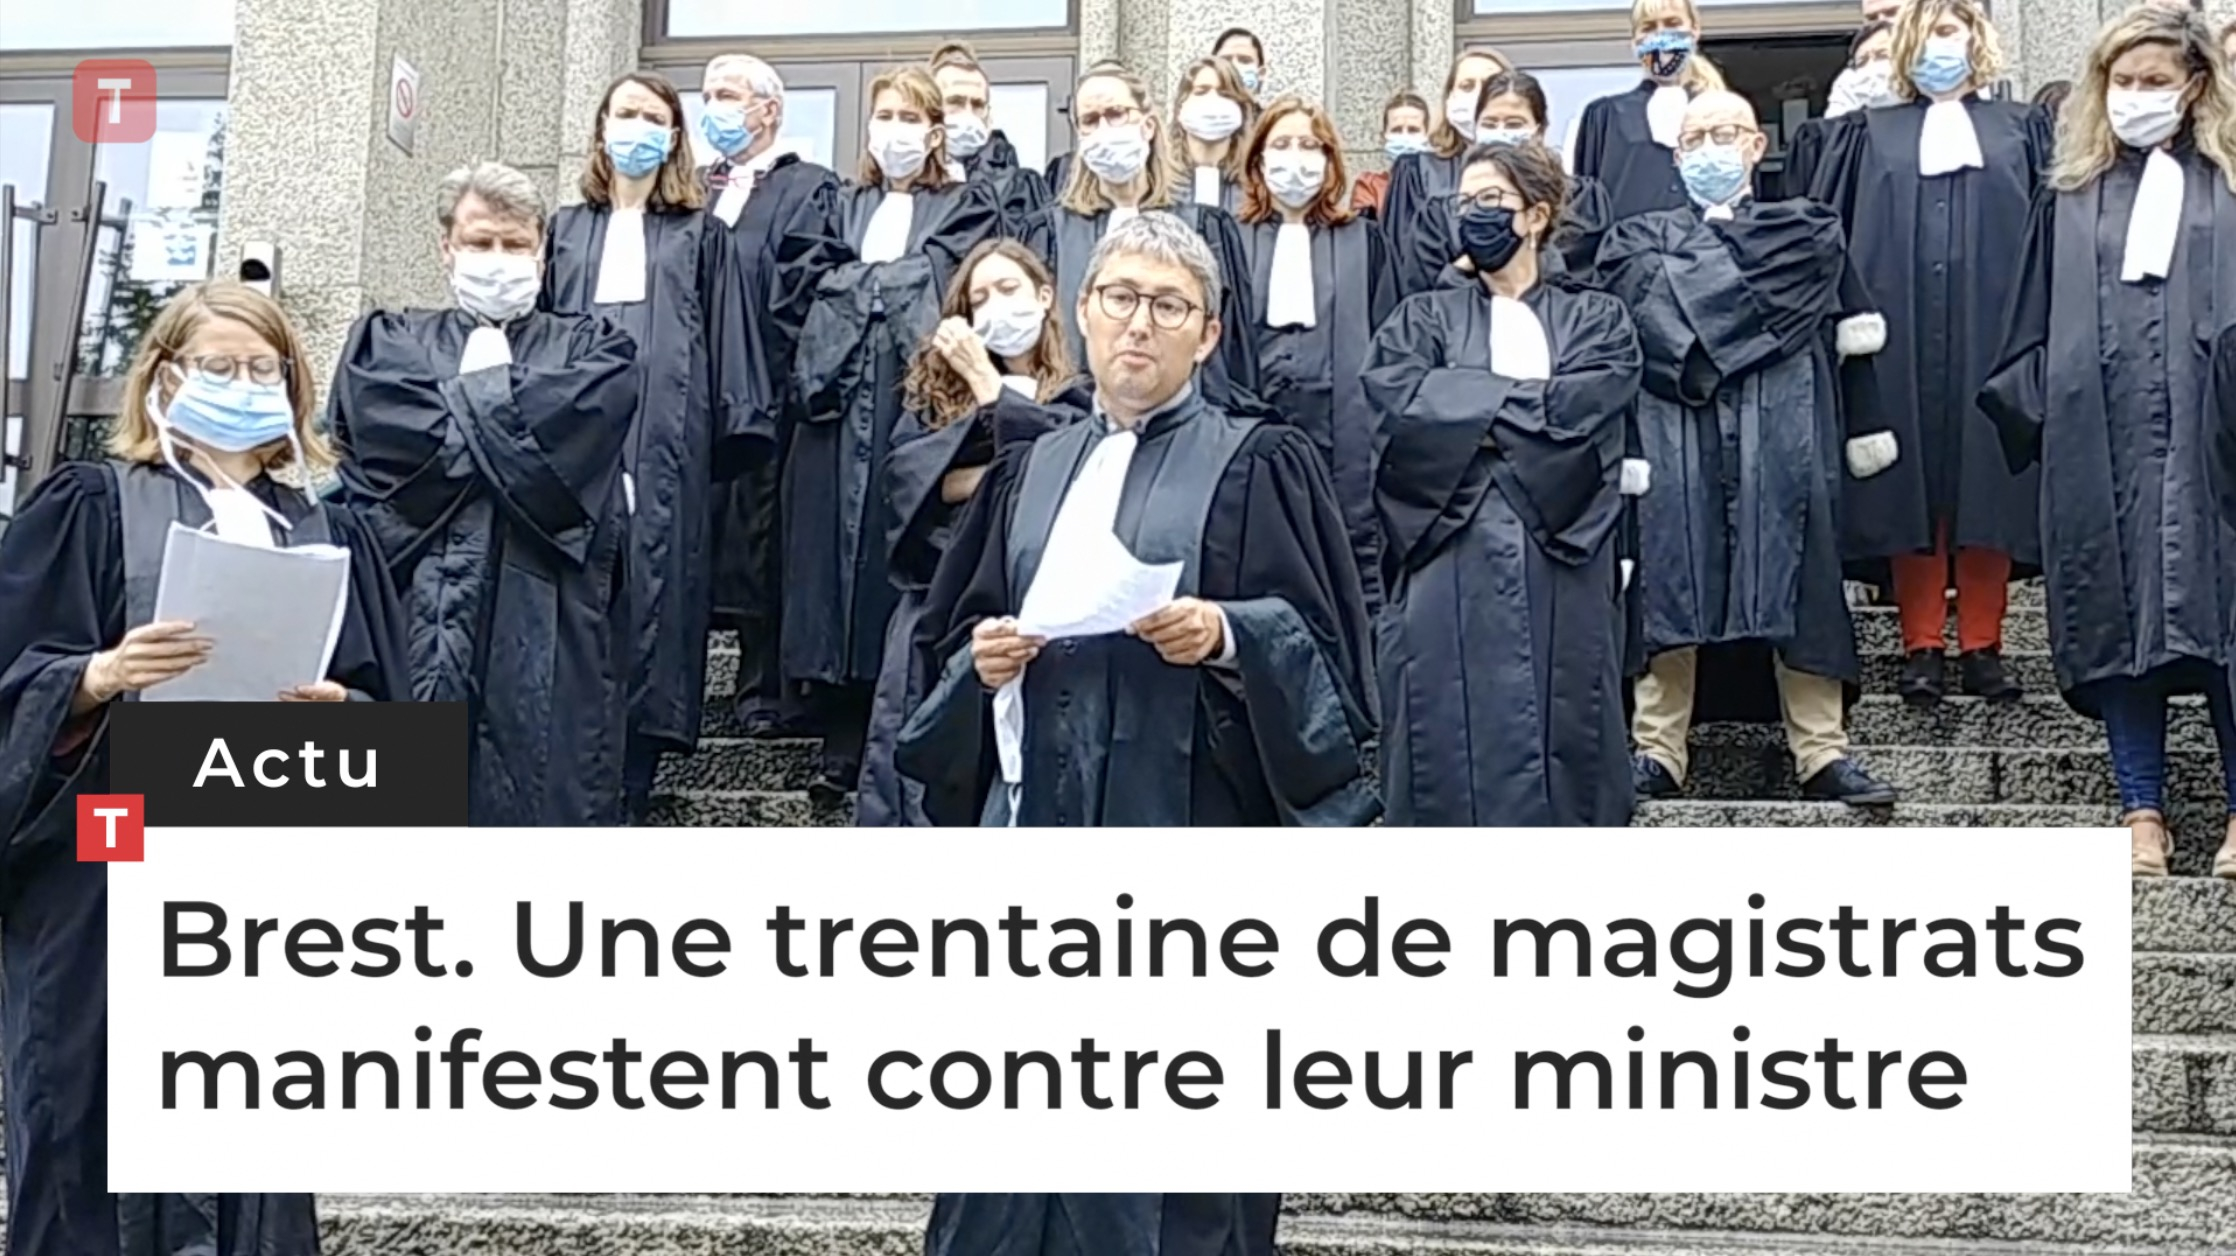 Brest. Une trentaine de magistrats manifestent contre leur ministre (Le Télégramme)